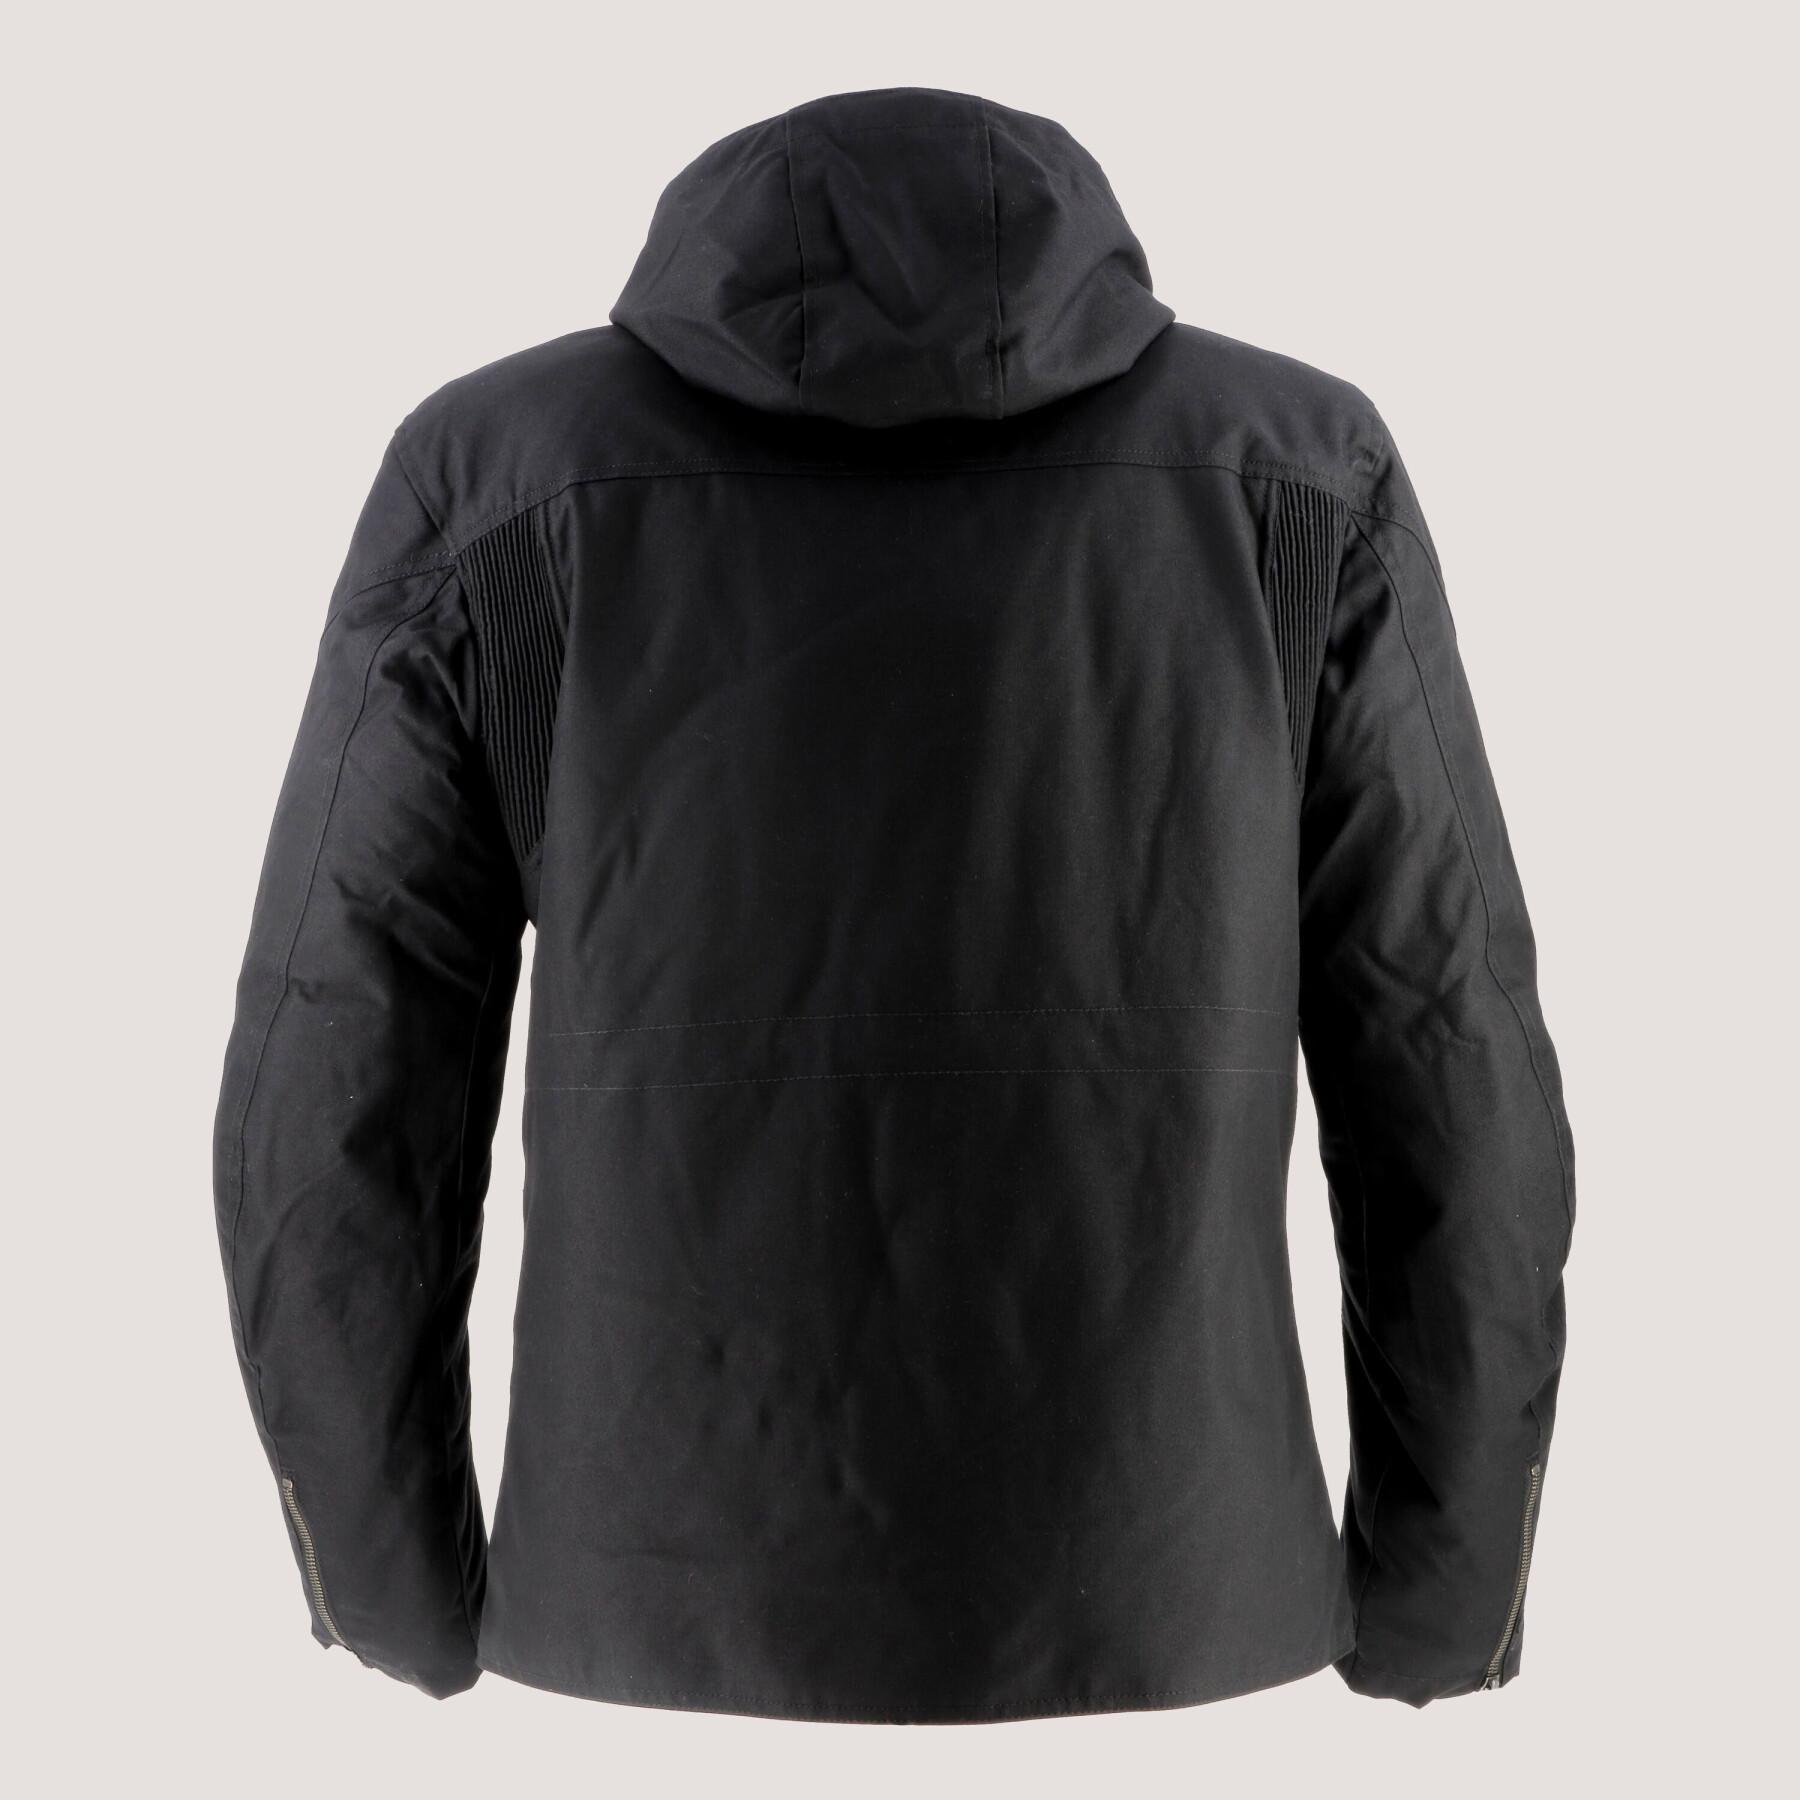 Waterproof jacket in technical fabric Helstons Forward